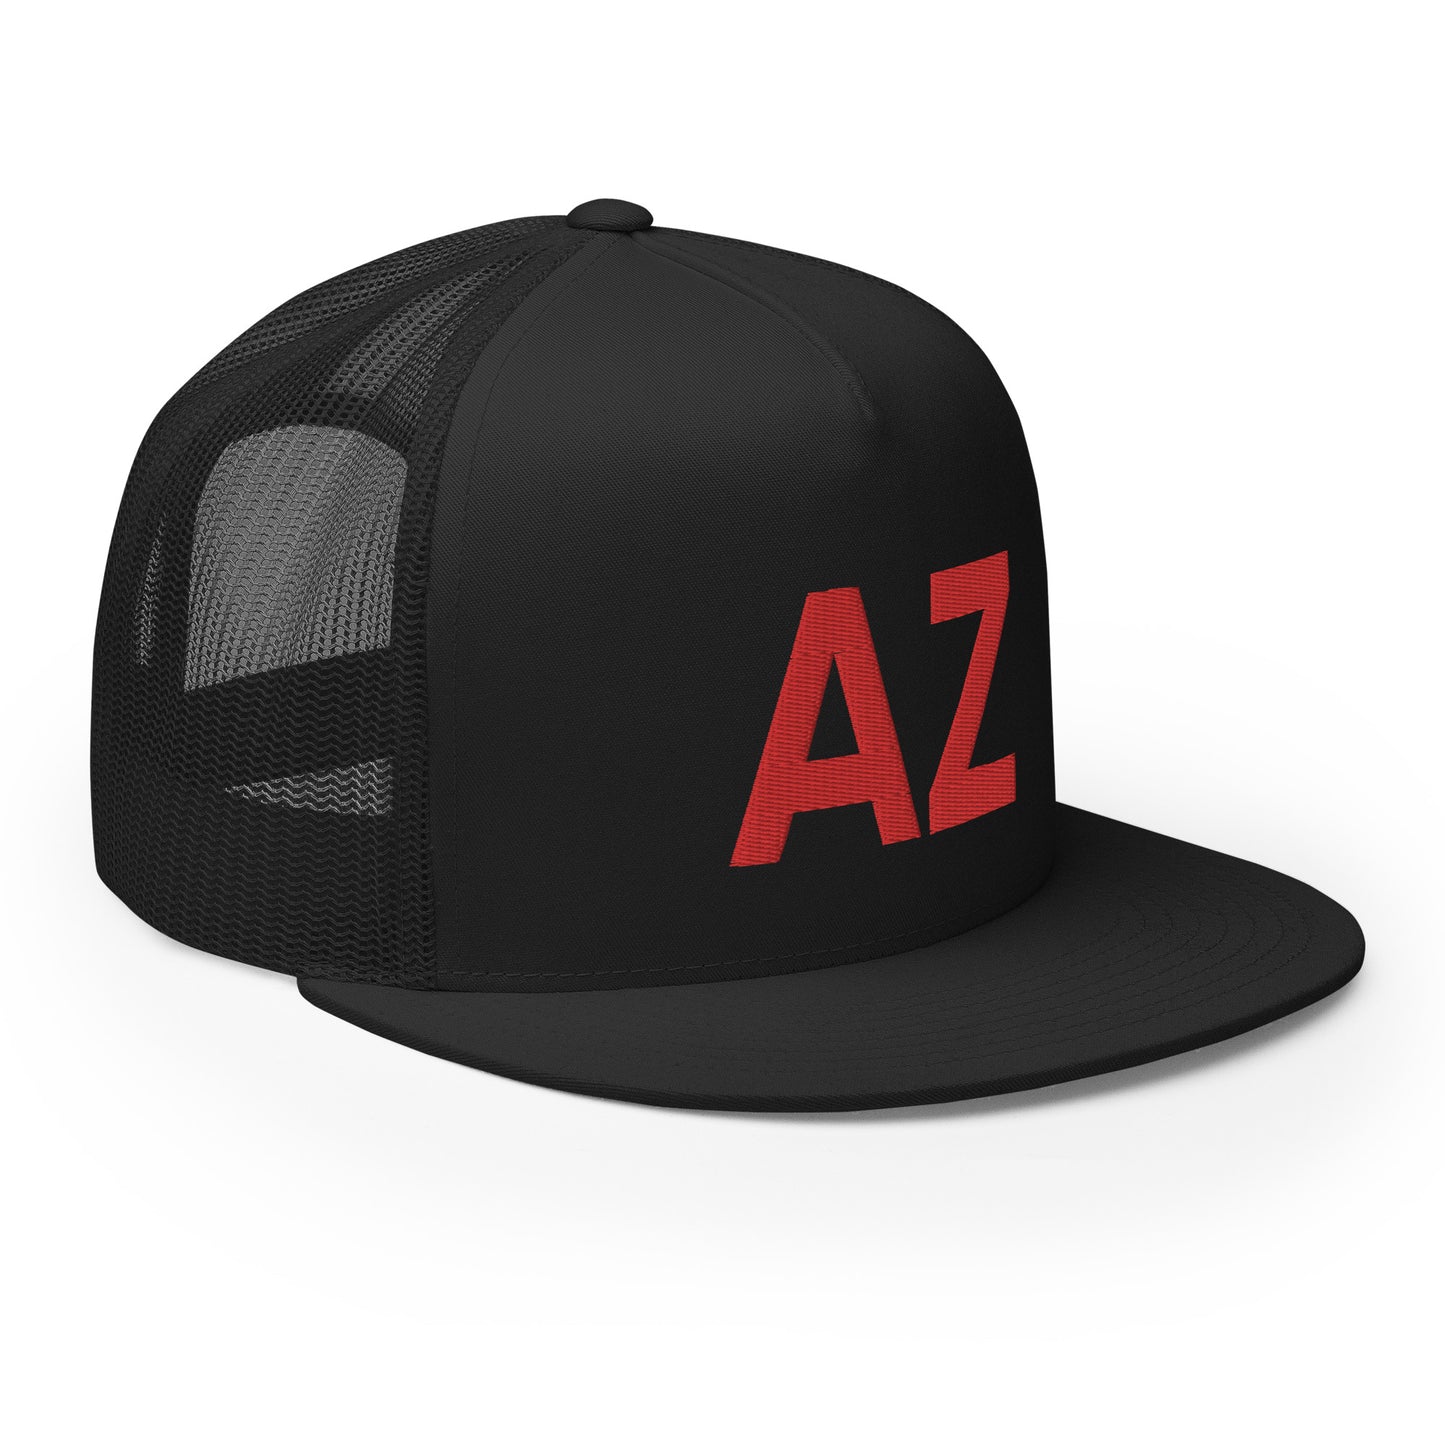 AZ Arizona Strong Trucker Hat